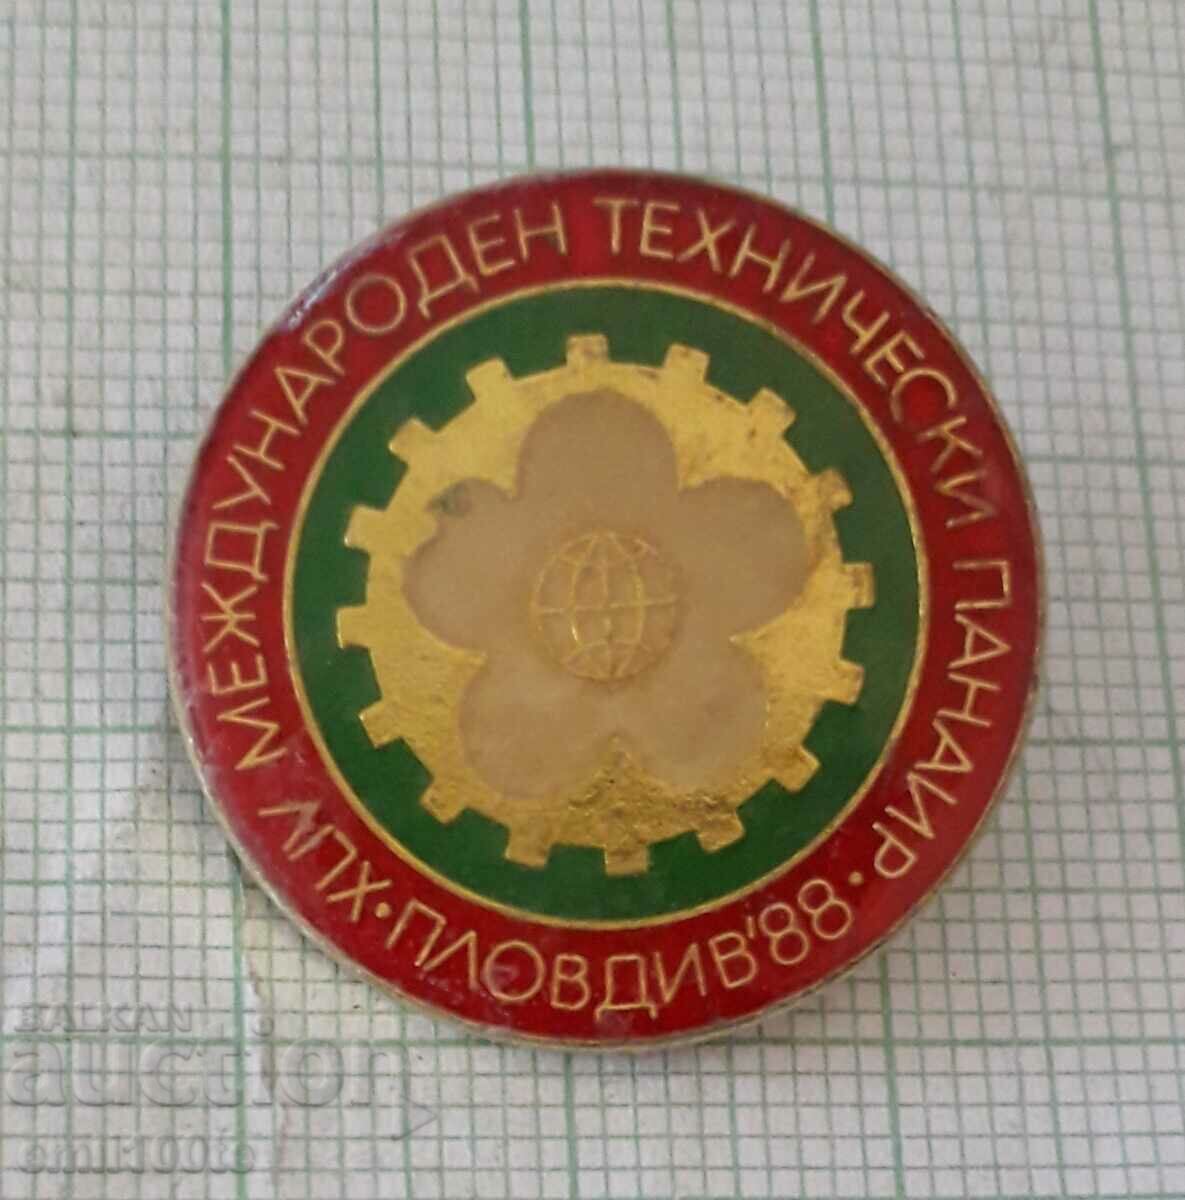 Σήμα - Διεθνής Τεχνική Έκθεση Plovdiv 1988